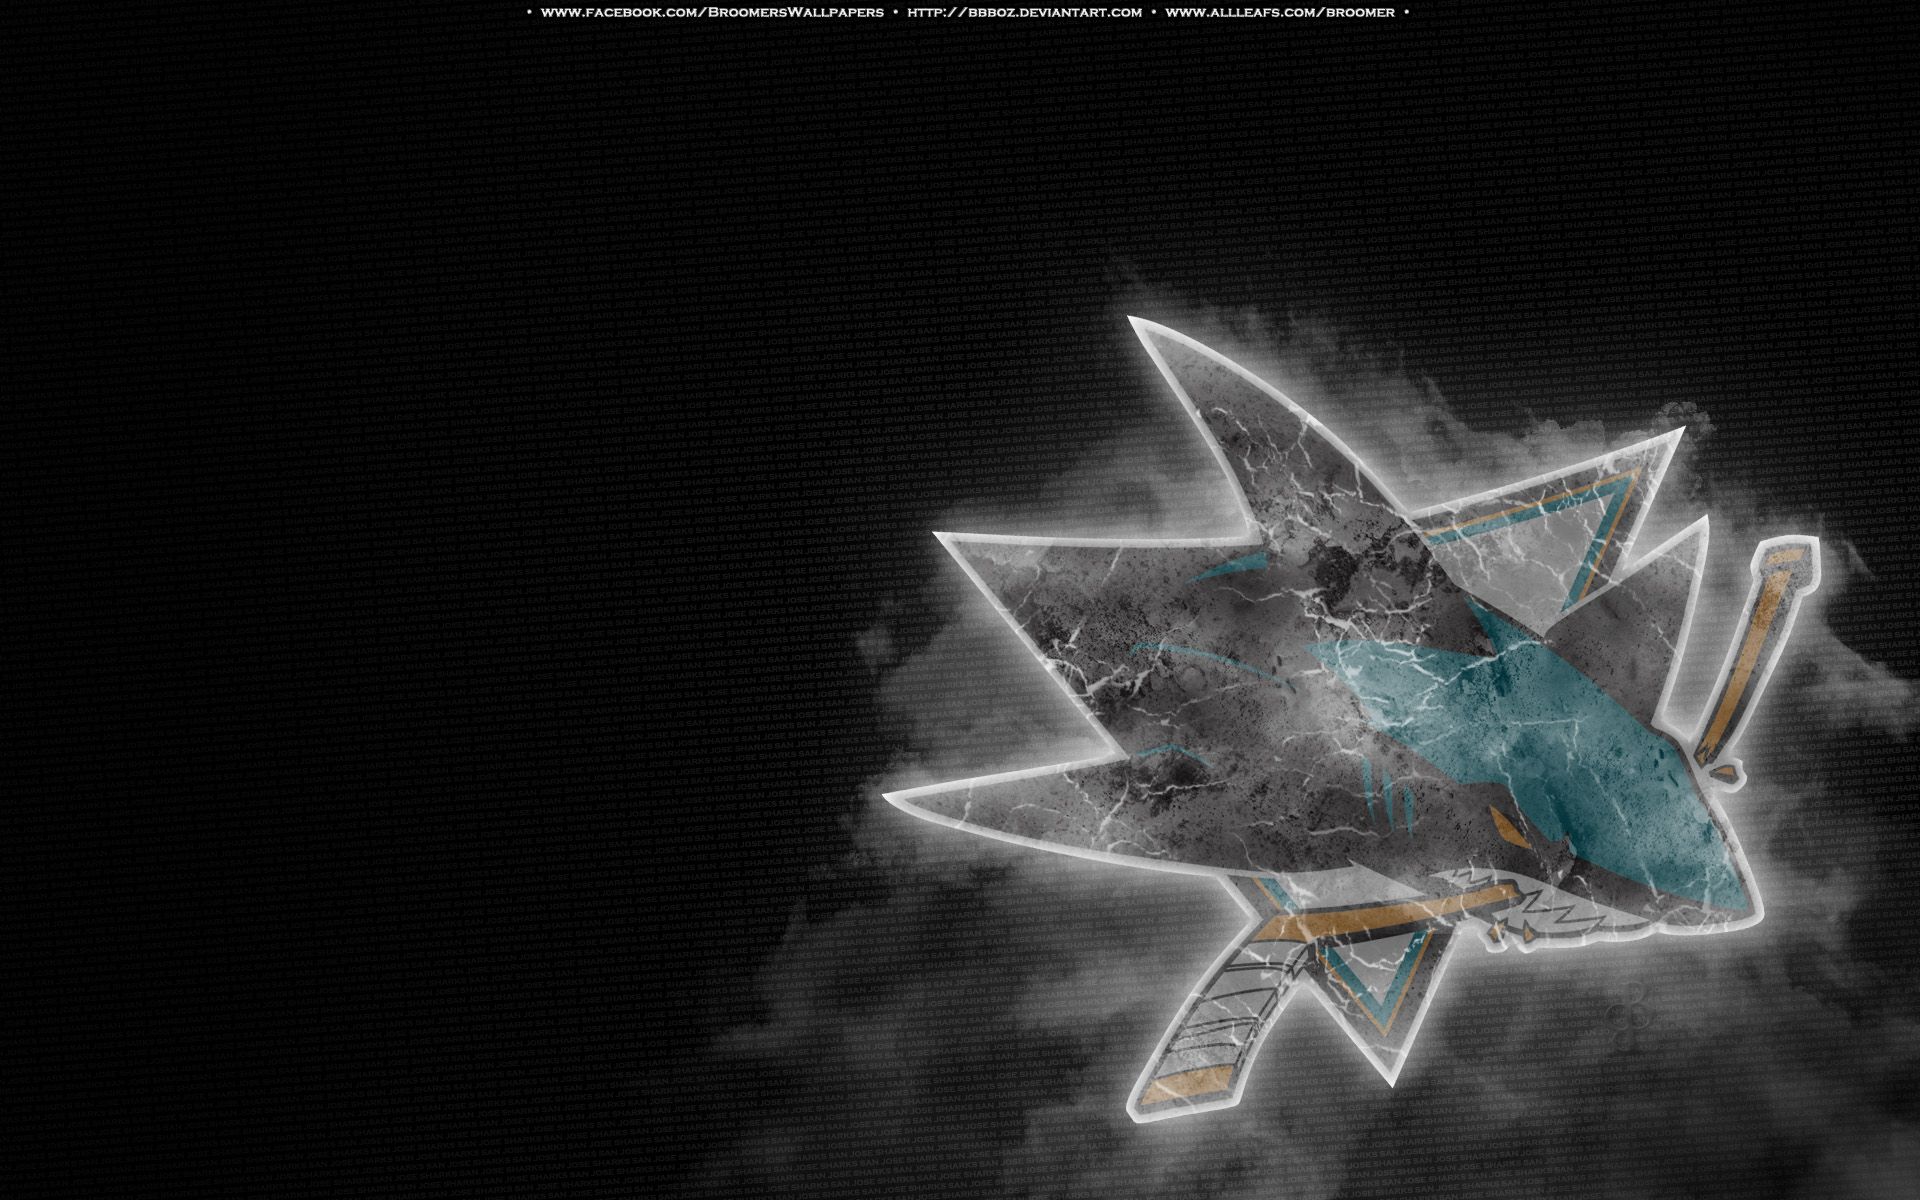 tiburones de san jose fondo de pantalla para iphone,fuente,ilustración,diseño gráfico,fotografía,espacio